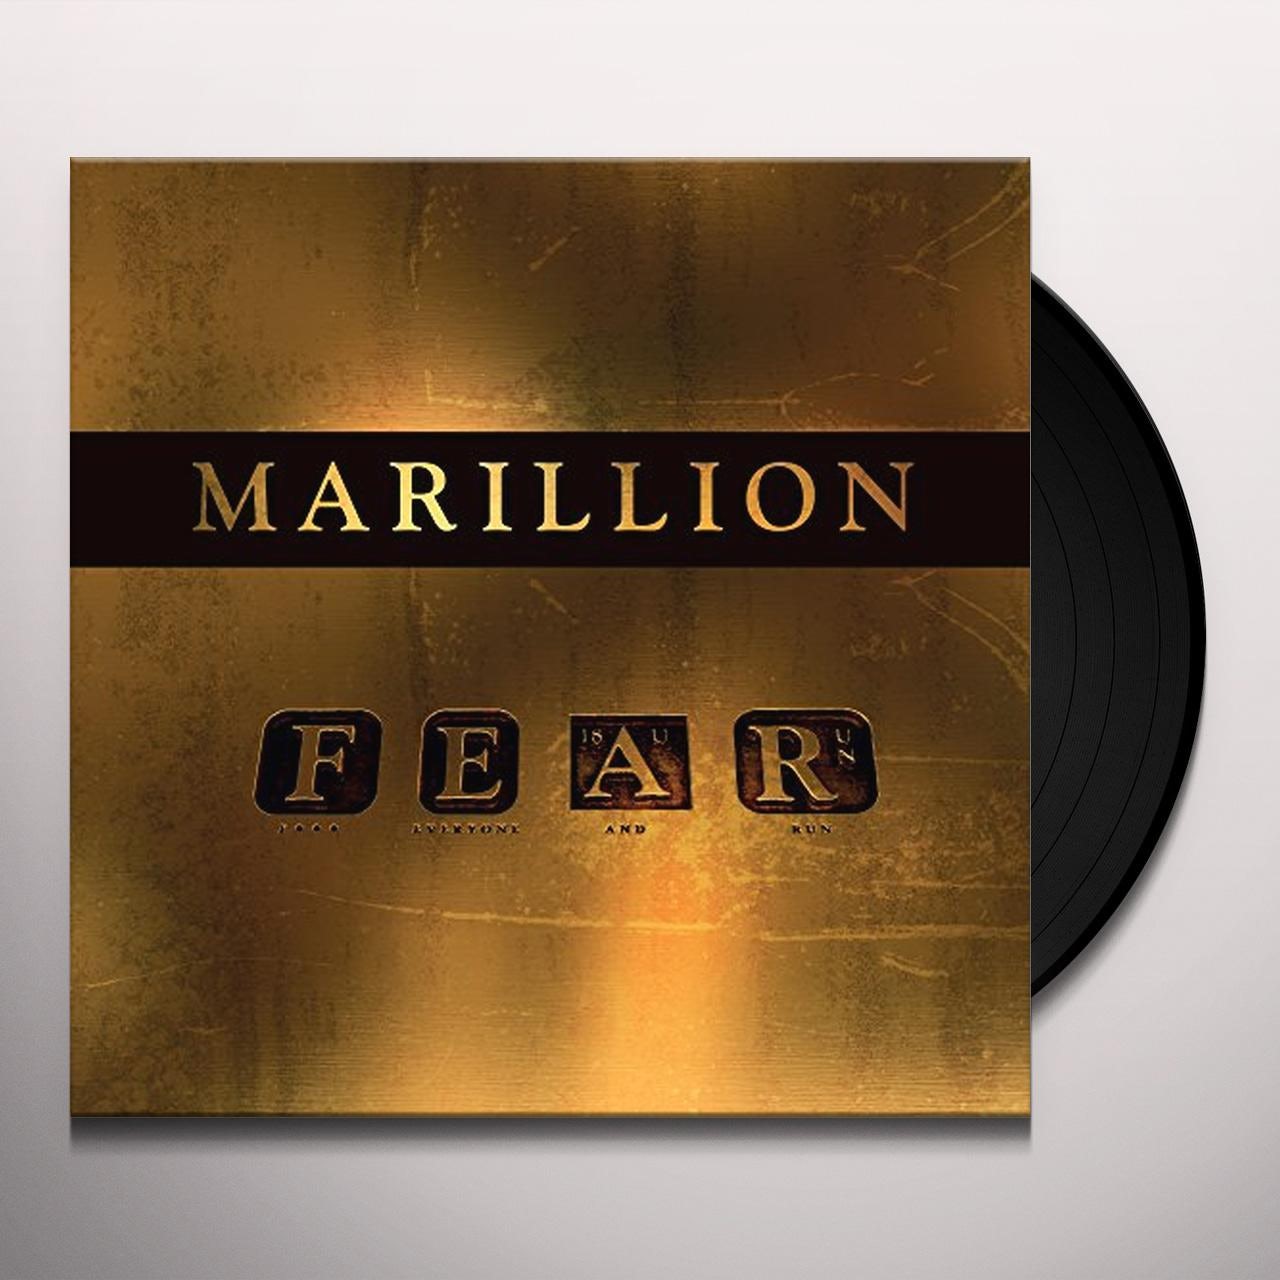 Marillion - F E A R (2LP Gatefold Sleeve) (FEAR)